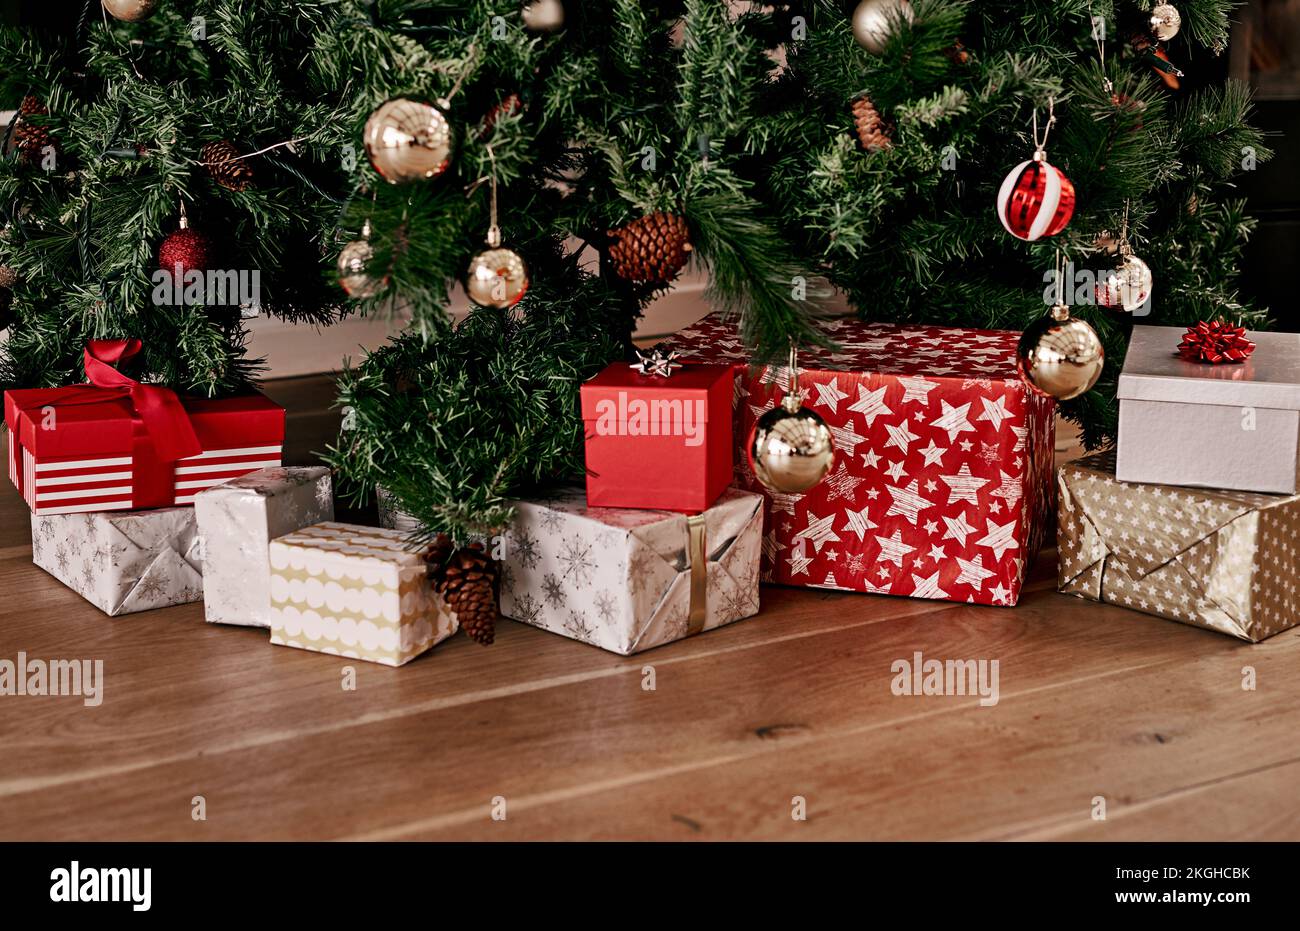 Noël, plancher et boîte de cadeau par arbre pour la fête, la saison des fêtes et la fête. Noël, surprise et gratitude avec le présent sur le sol de la salle de séjour Banque D'Images